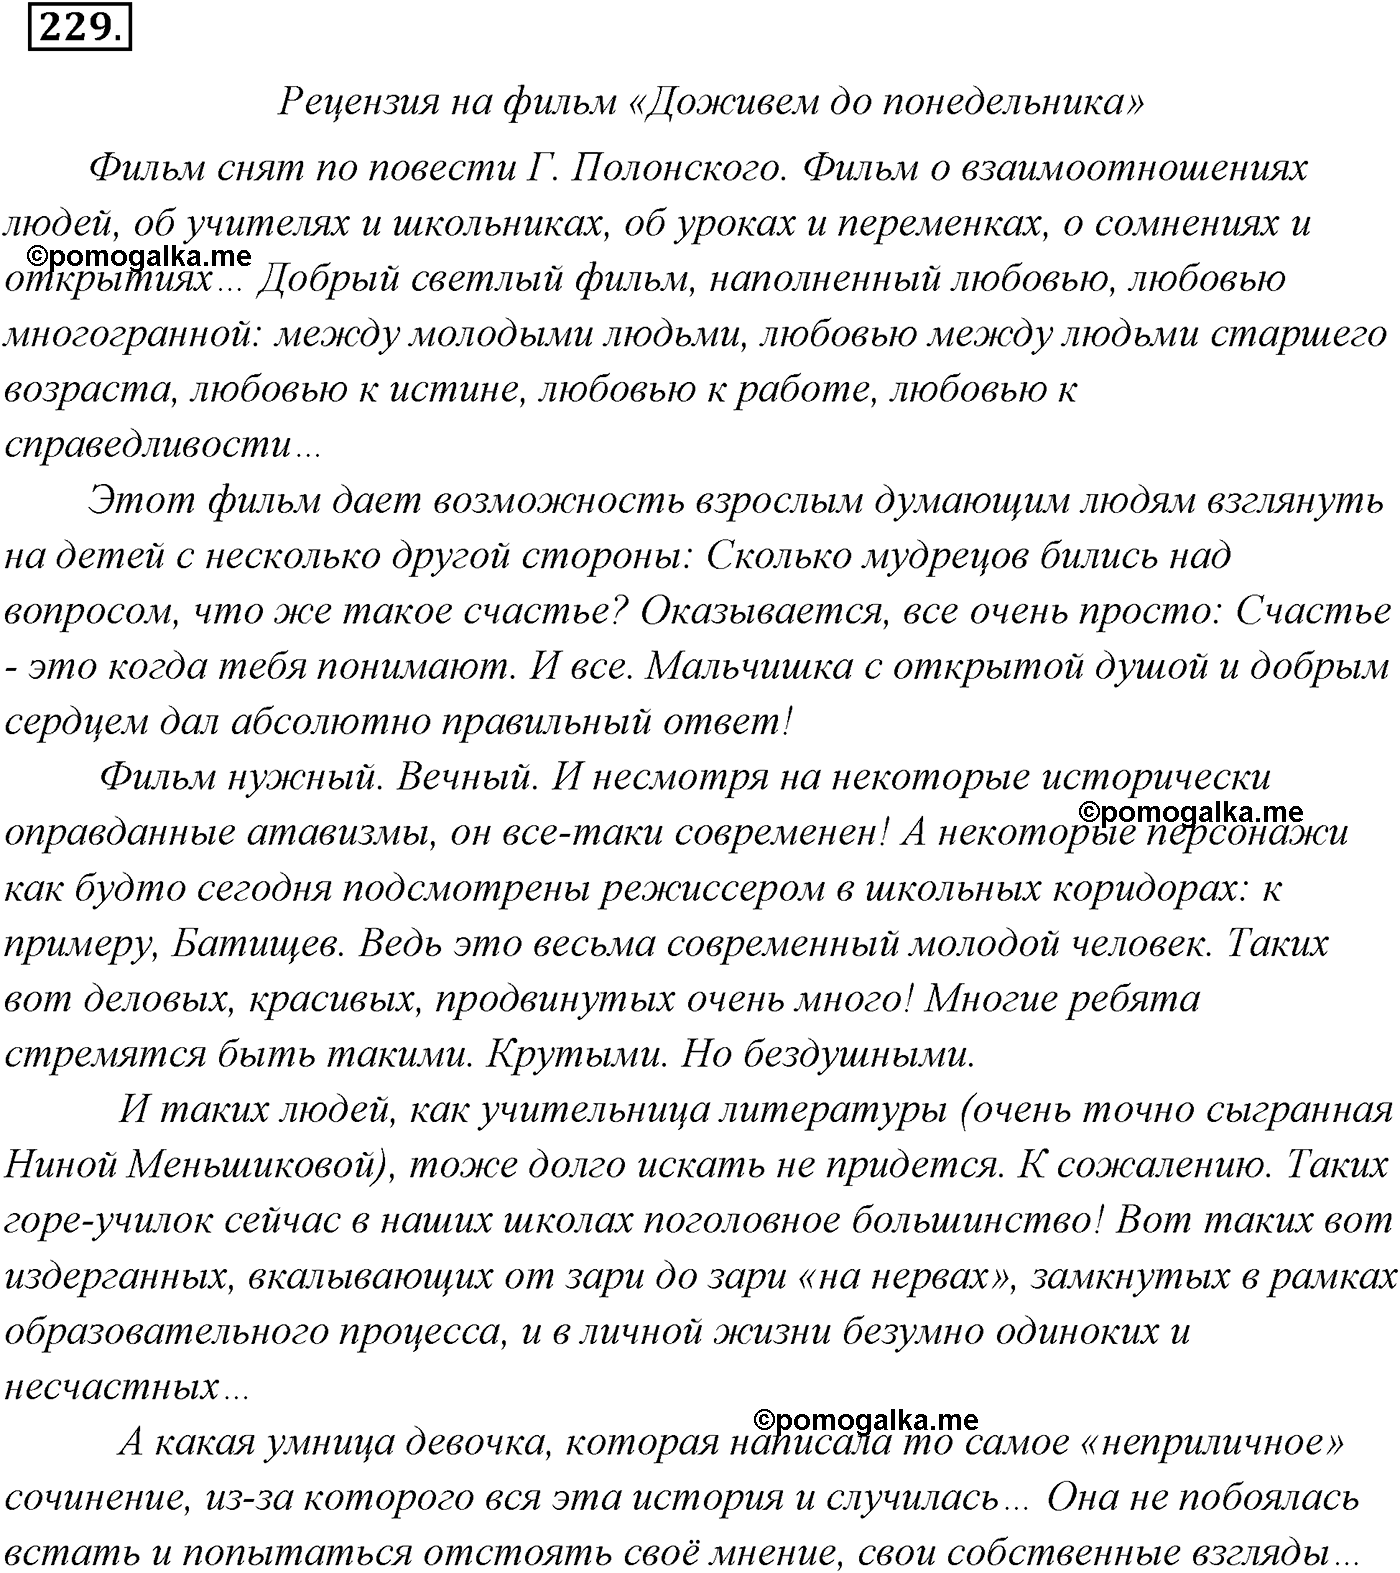 страница 157 номер 229 русский язык 9 класс Разумовская 2011 год